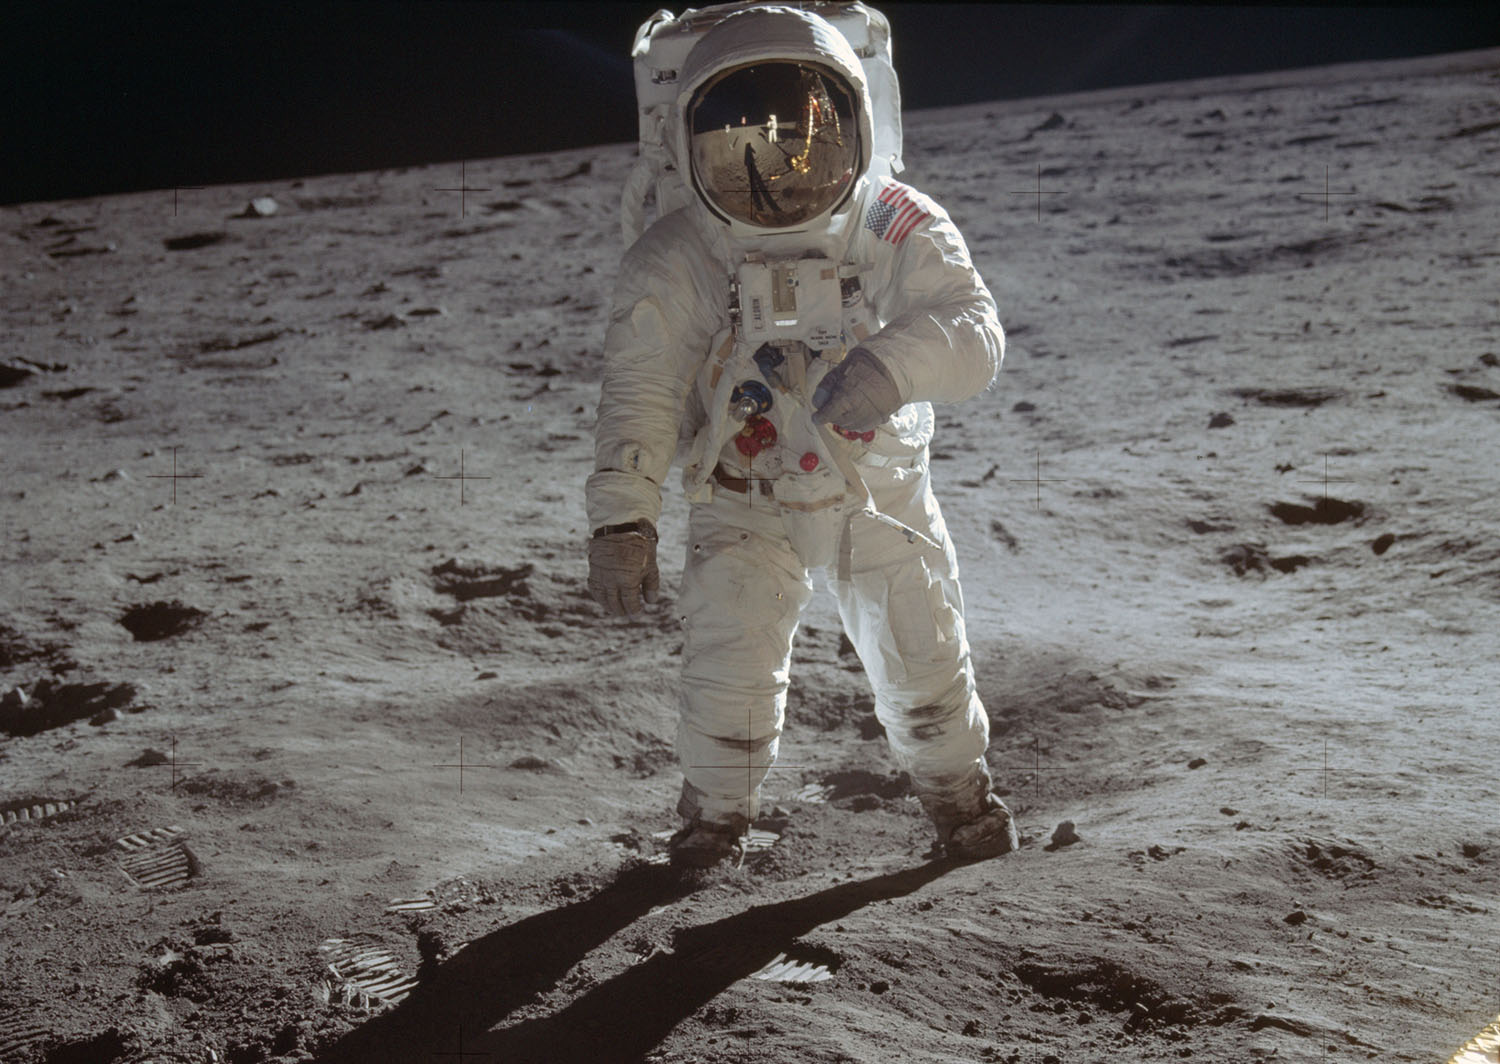 astronauts on moon 1920x1080